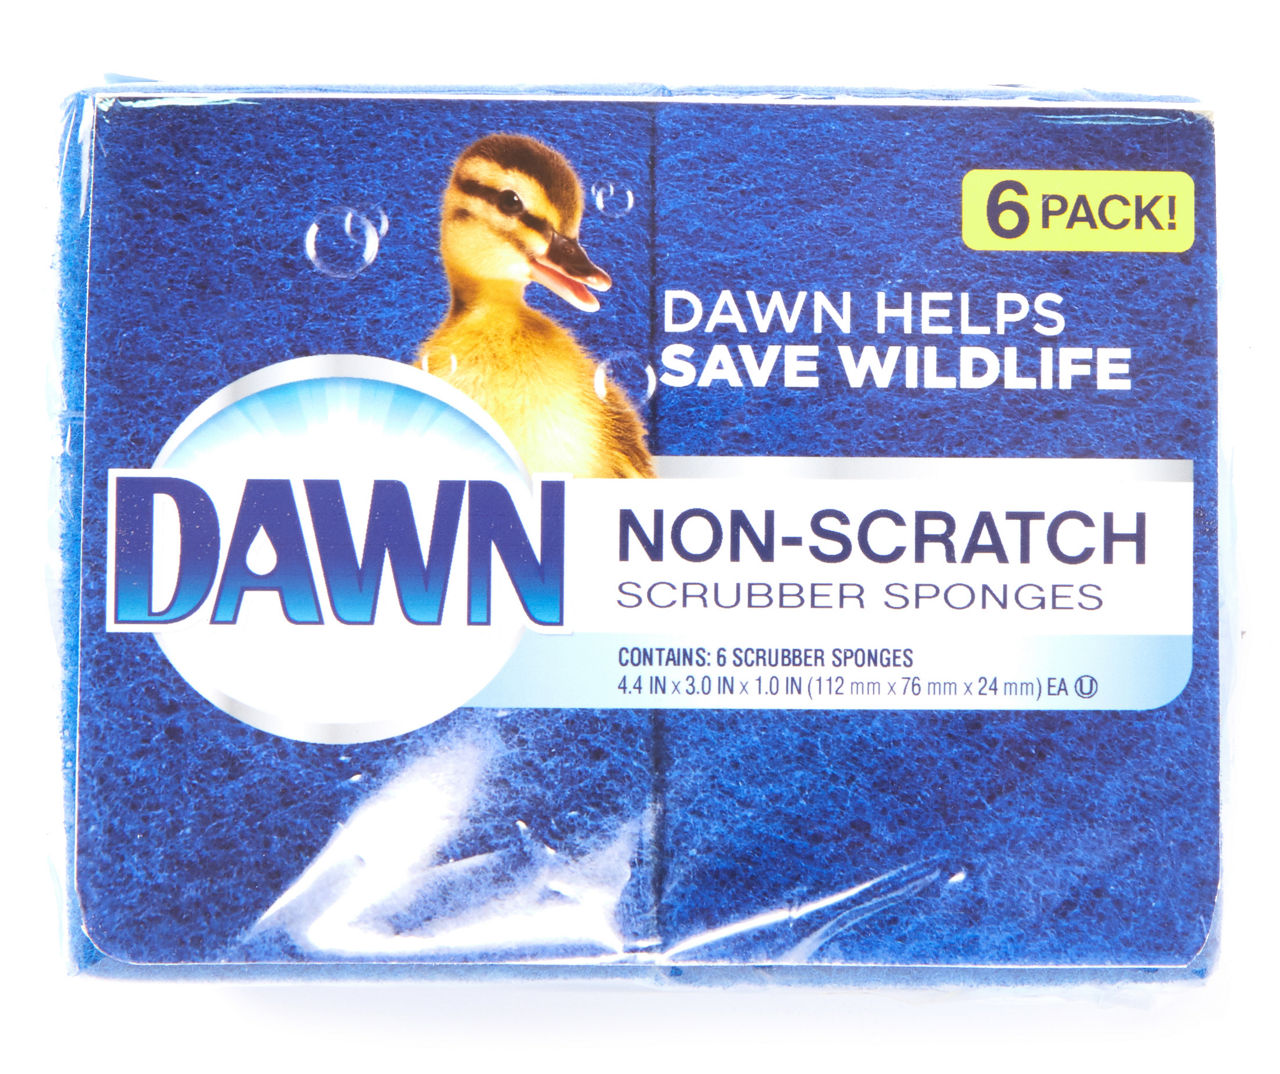 Dawn Non-Scratch Scrubber Sponges, 6 Pack